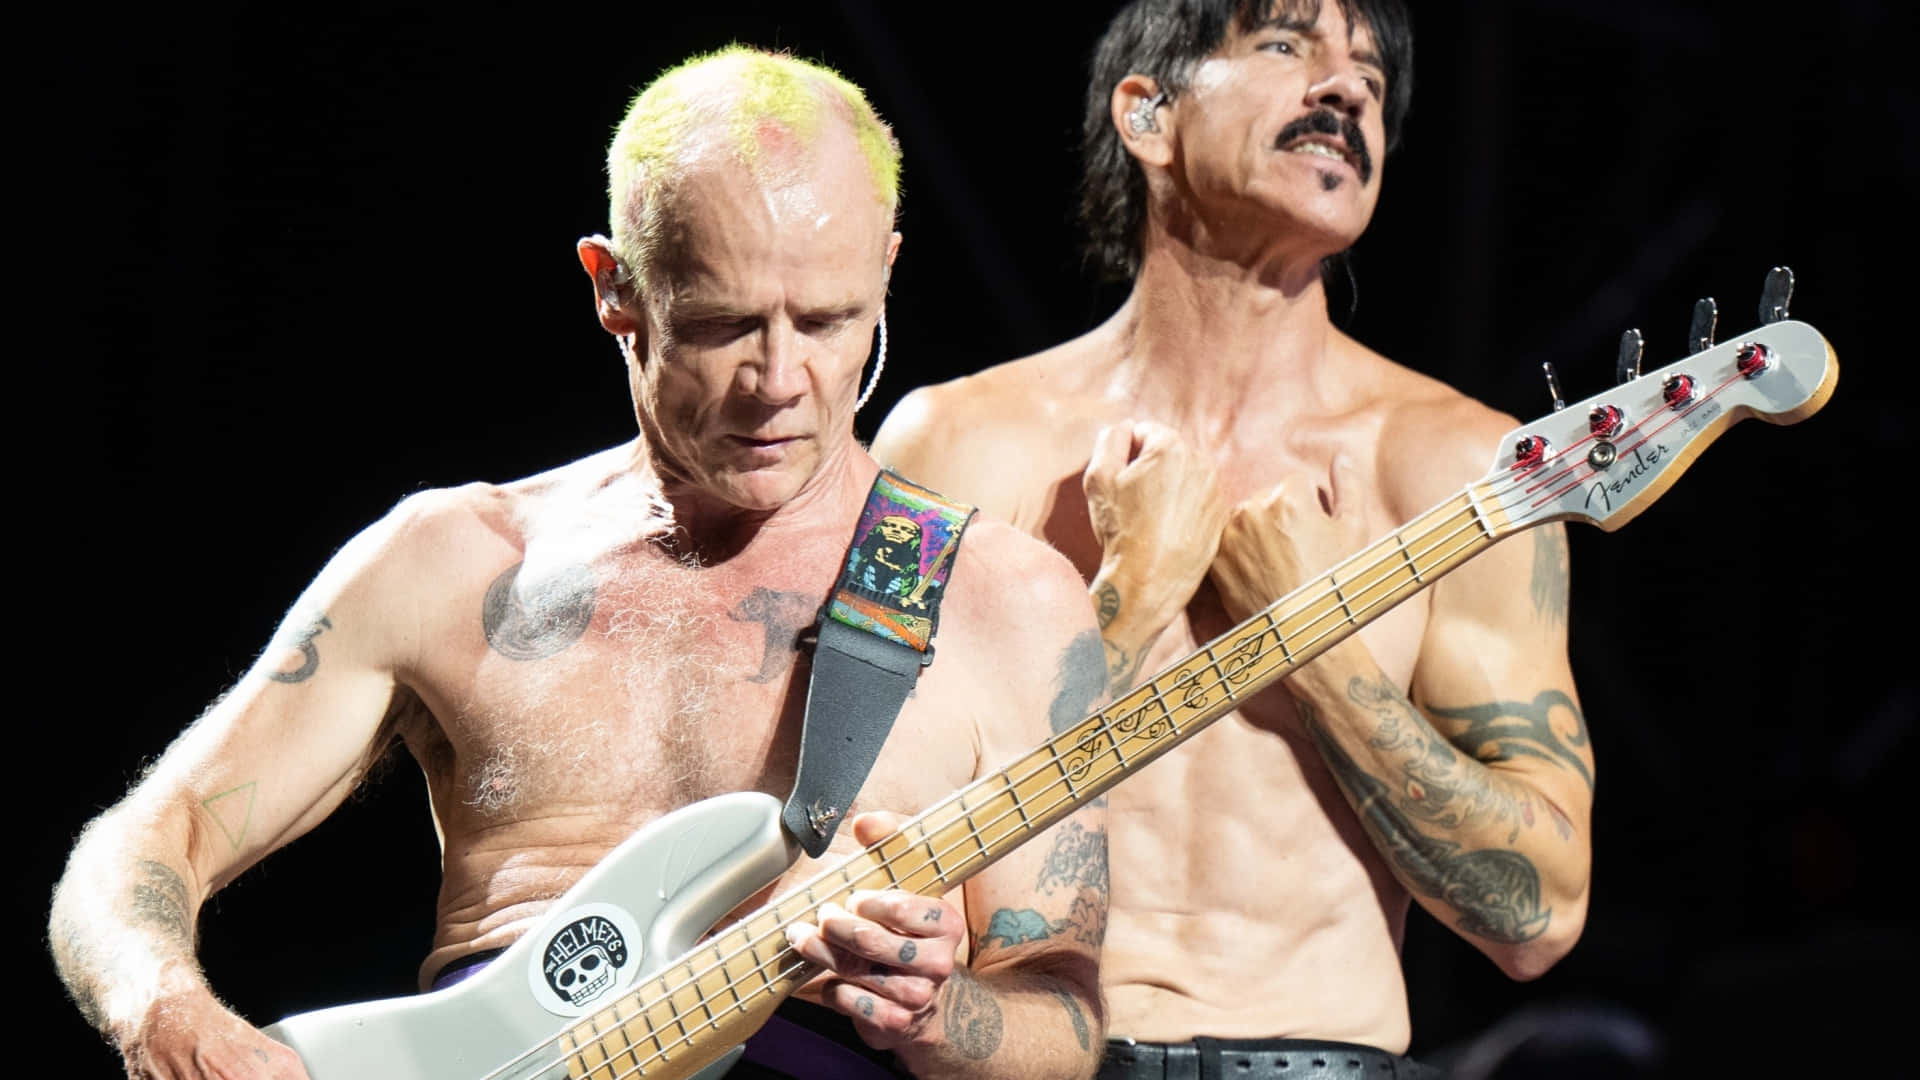 Redhot Chili Peppers - Flea Che Si Esibisce Senza Maglietta. Sfondo